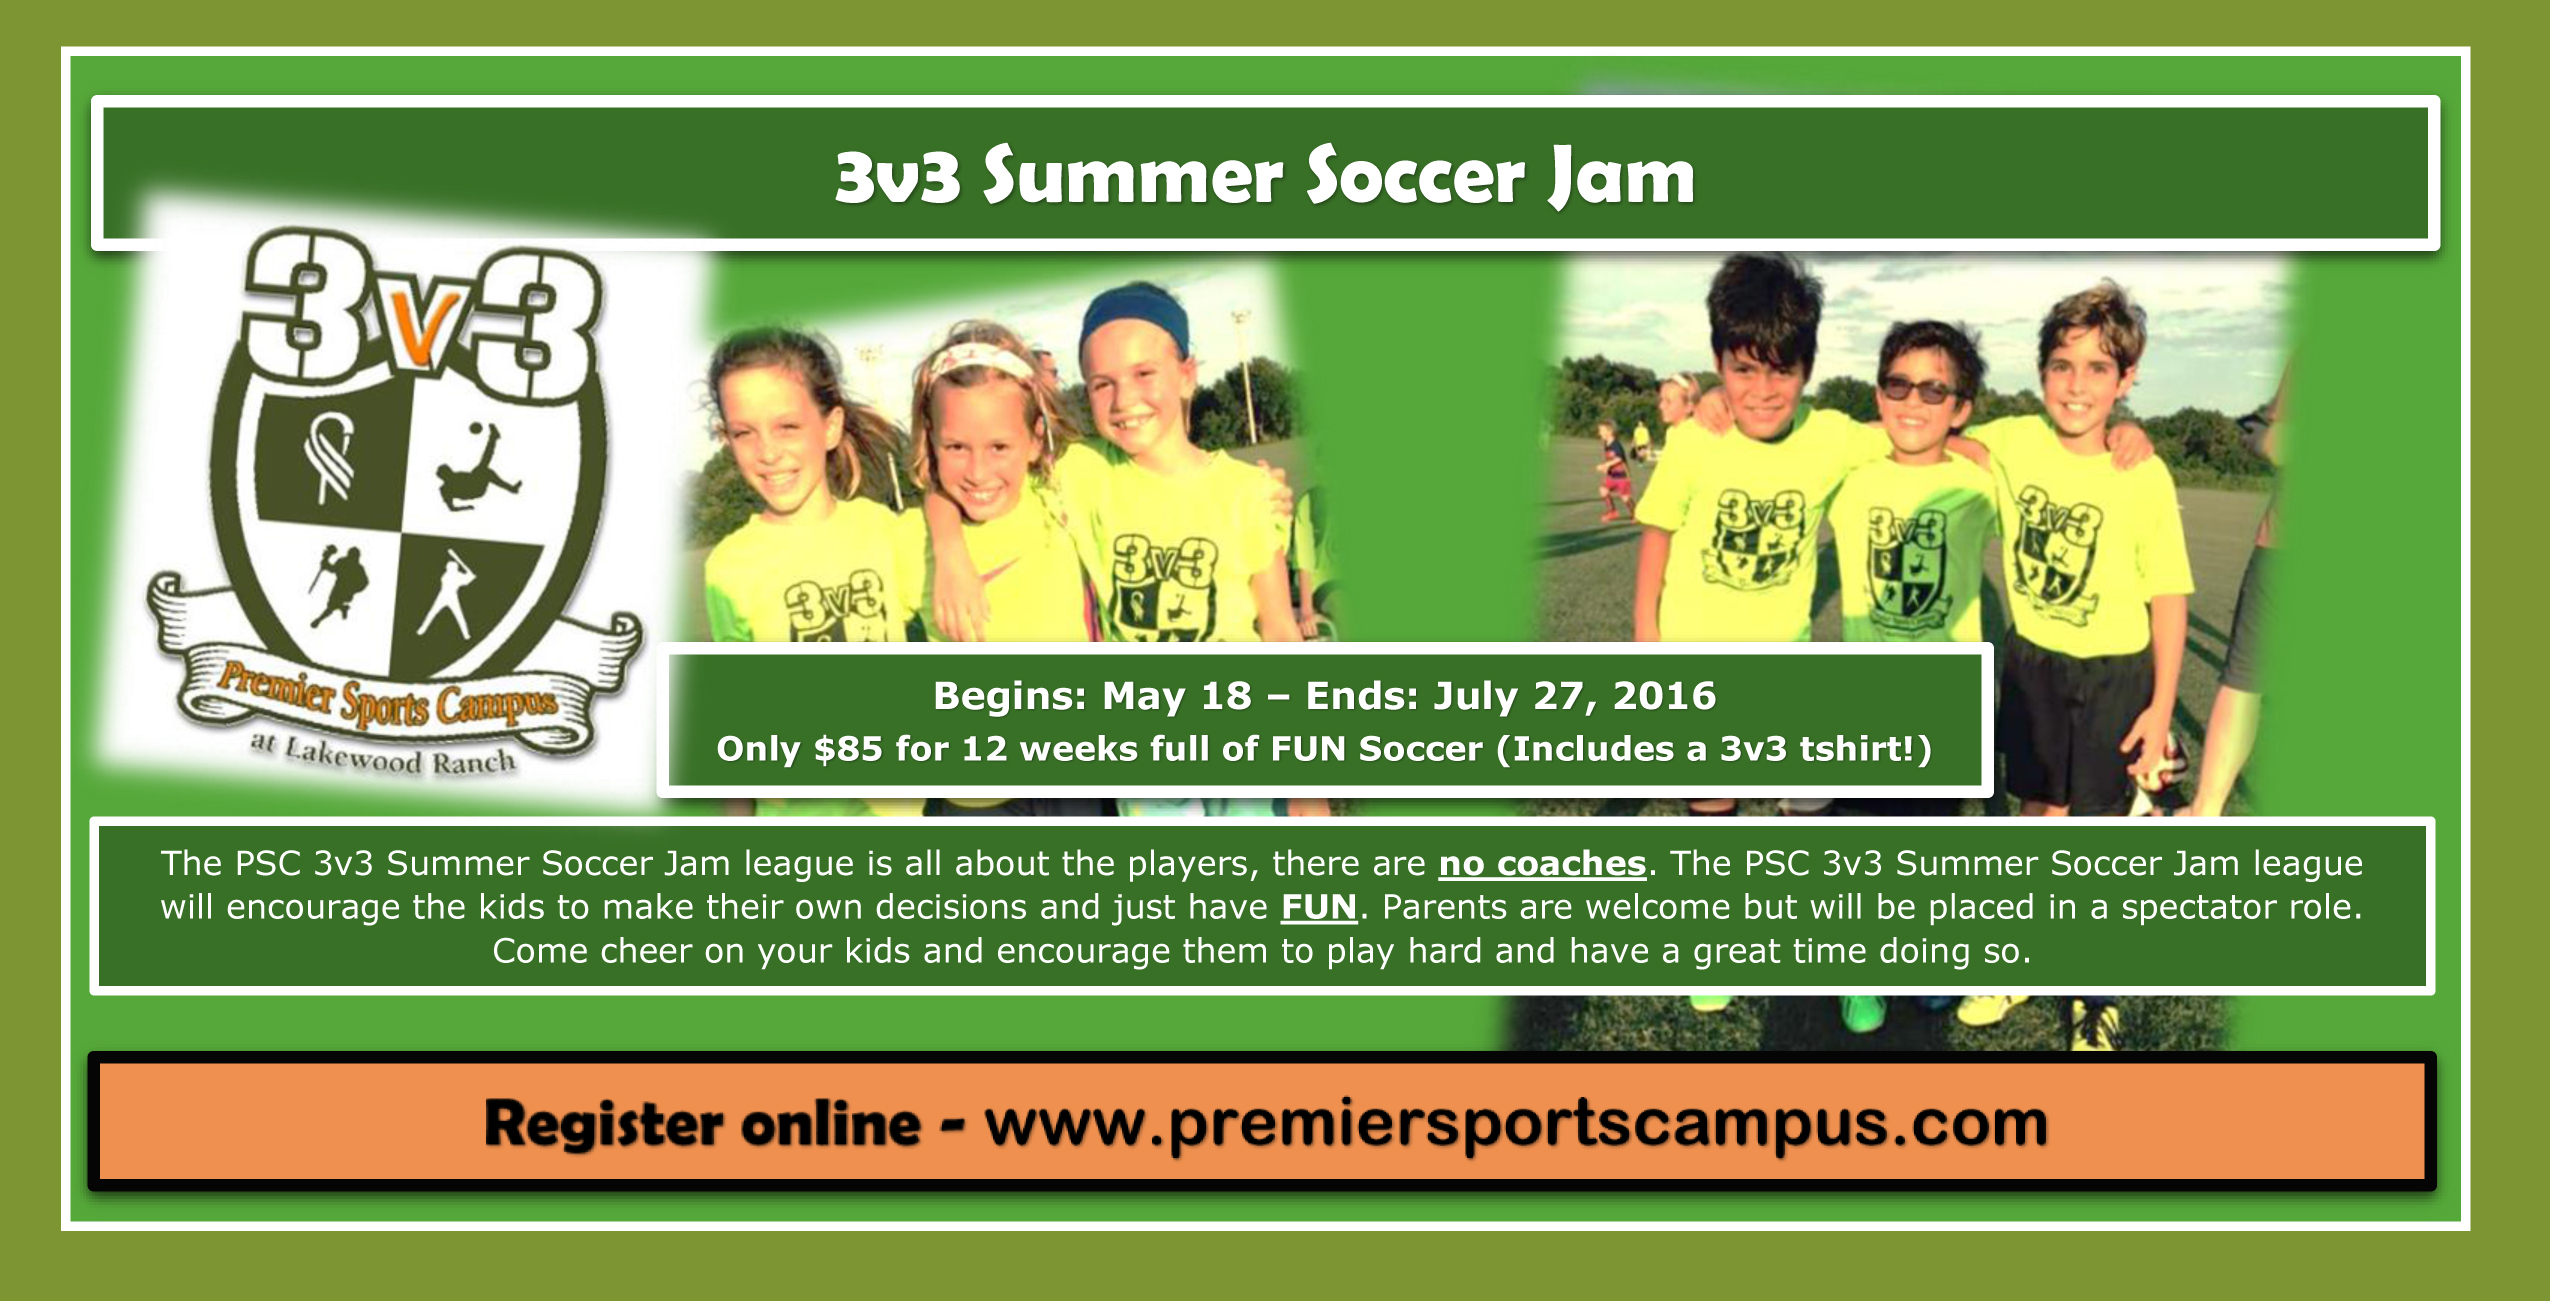 Premier Sports Campus 3v3 Summer Soccer Jam